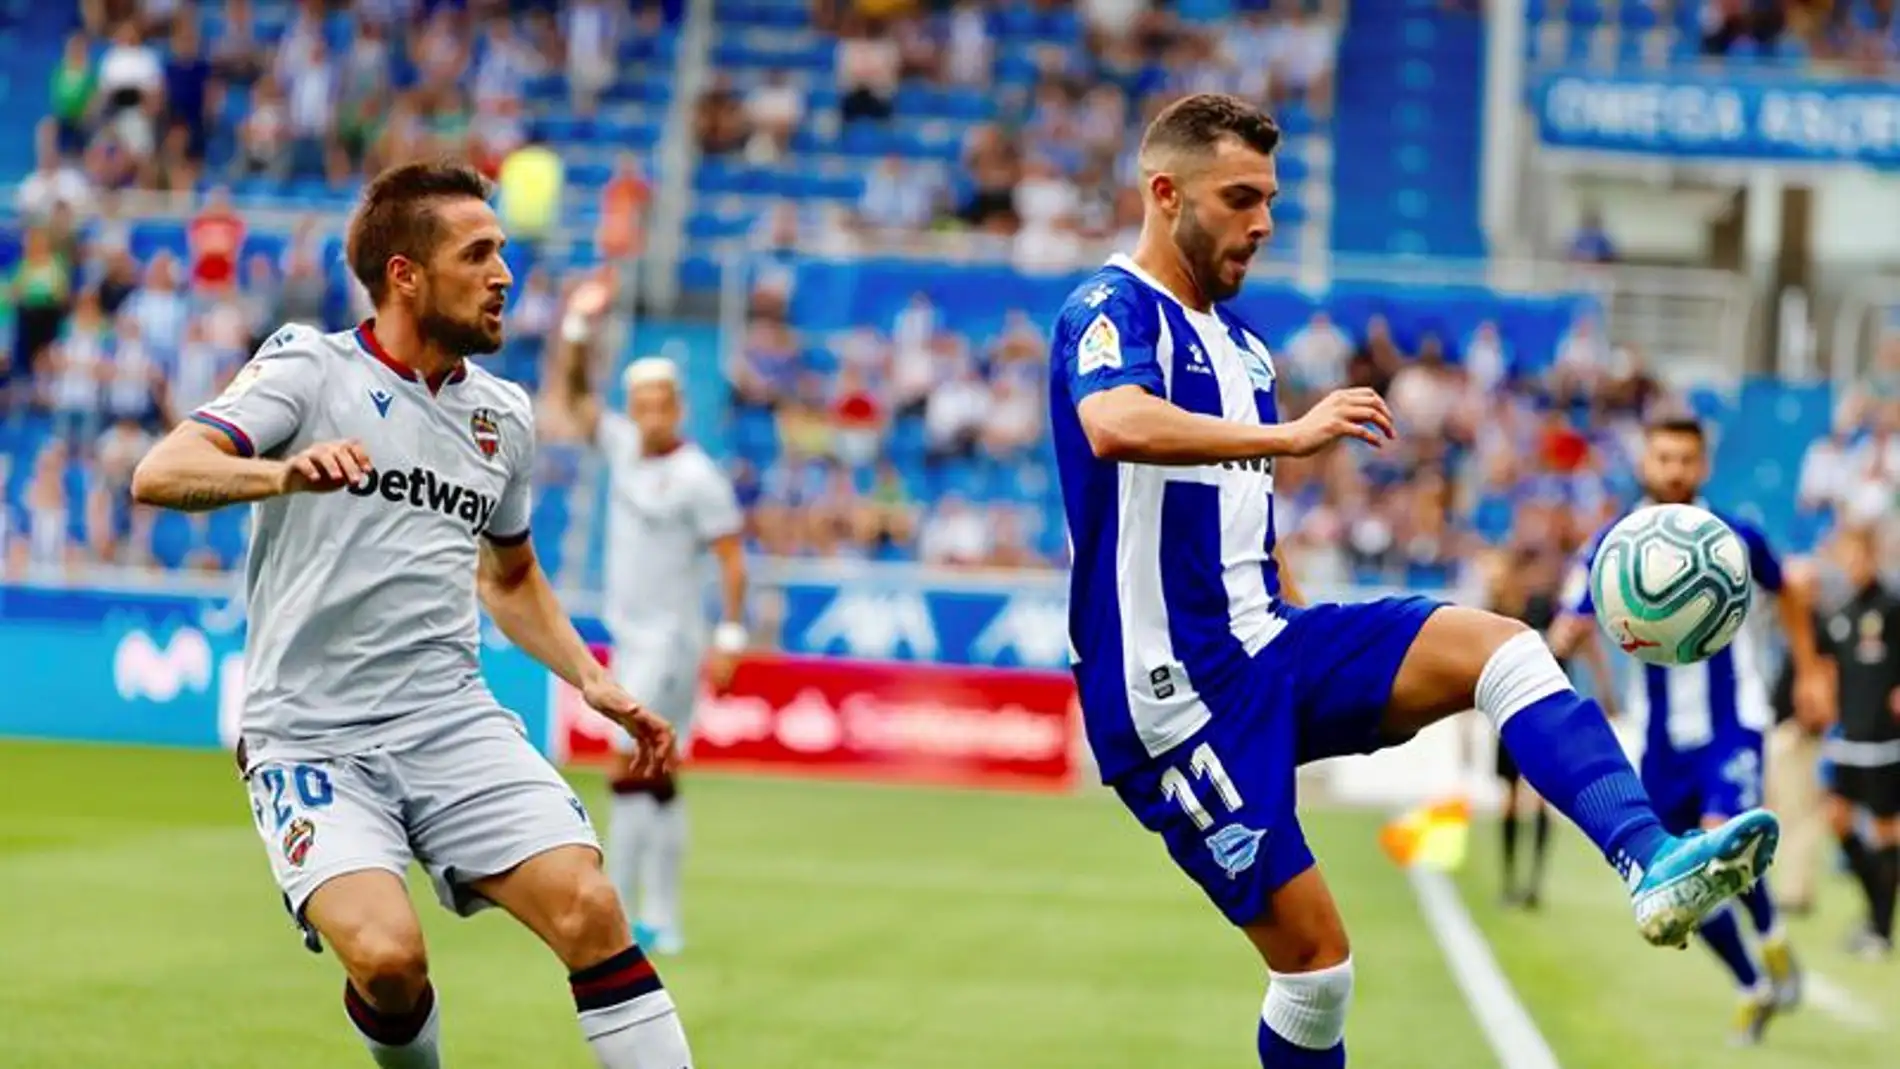  El jugador del Deportivo Alavés, Luis Rioja, controla el balón ante la presión del jugador del Levante U.D Jorge Miramón